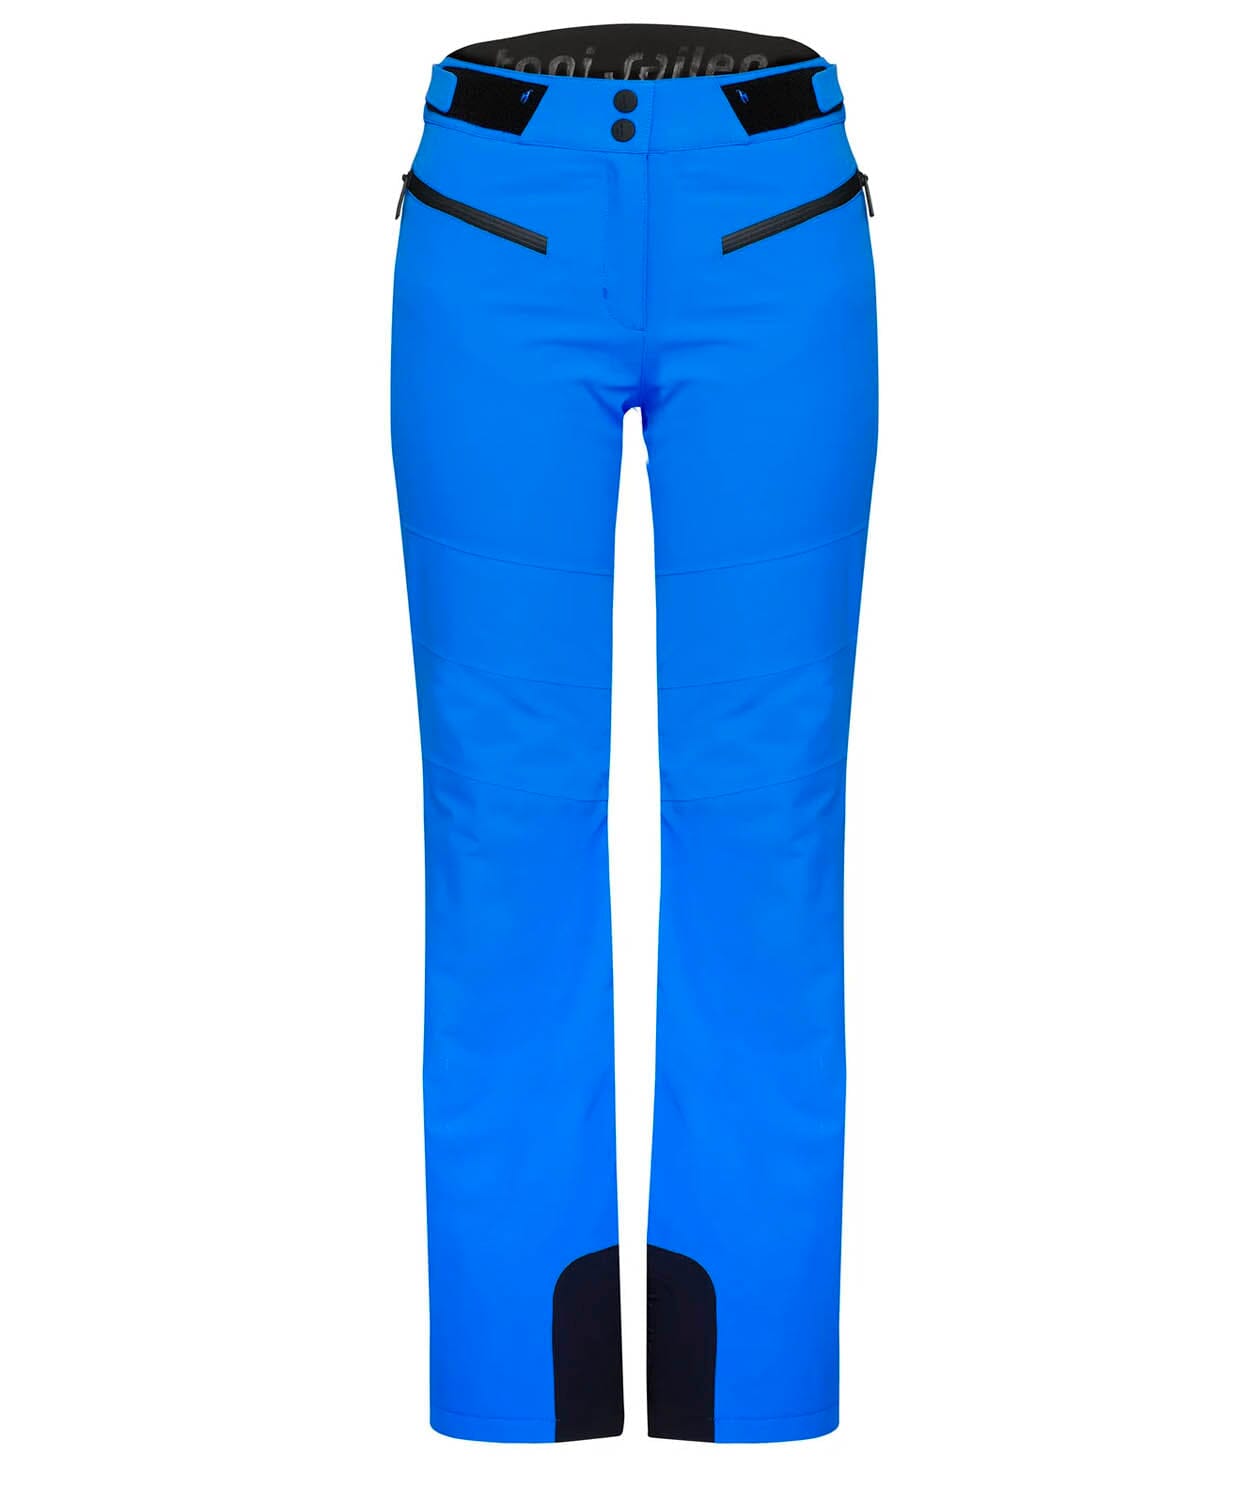 Women's Amis Pant Ski Pants Toni Sailer Blue Blush 34 